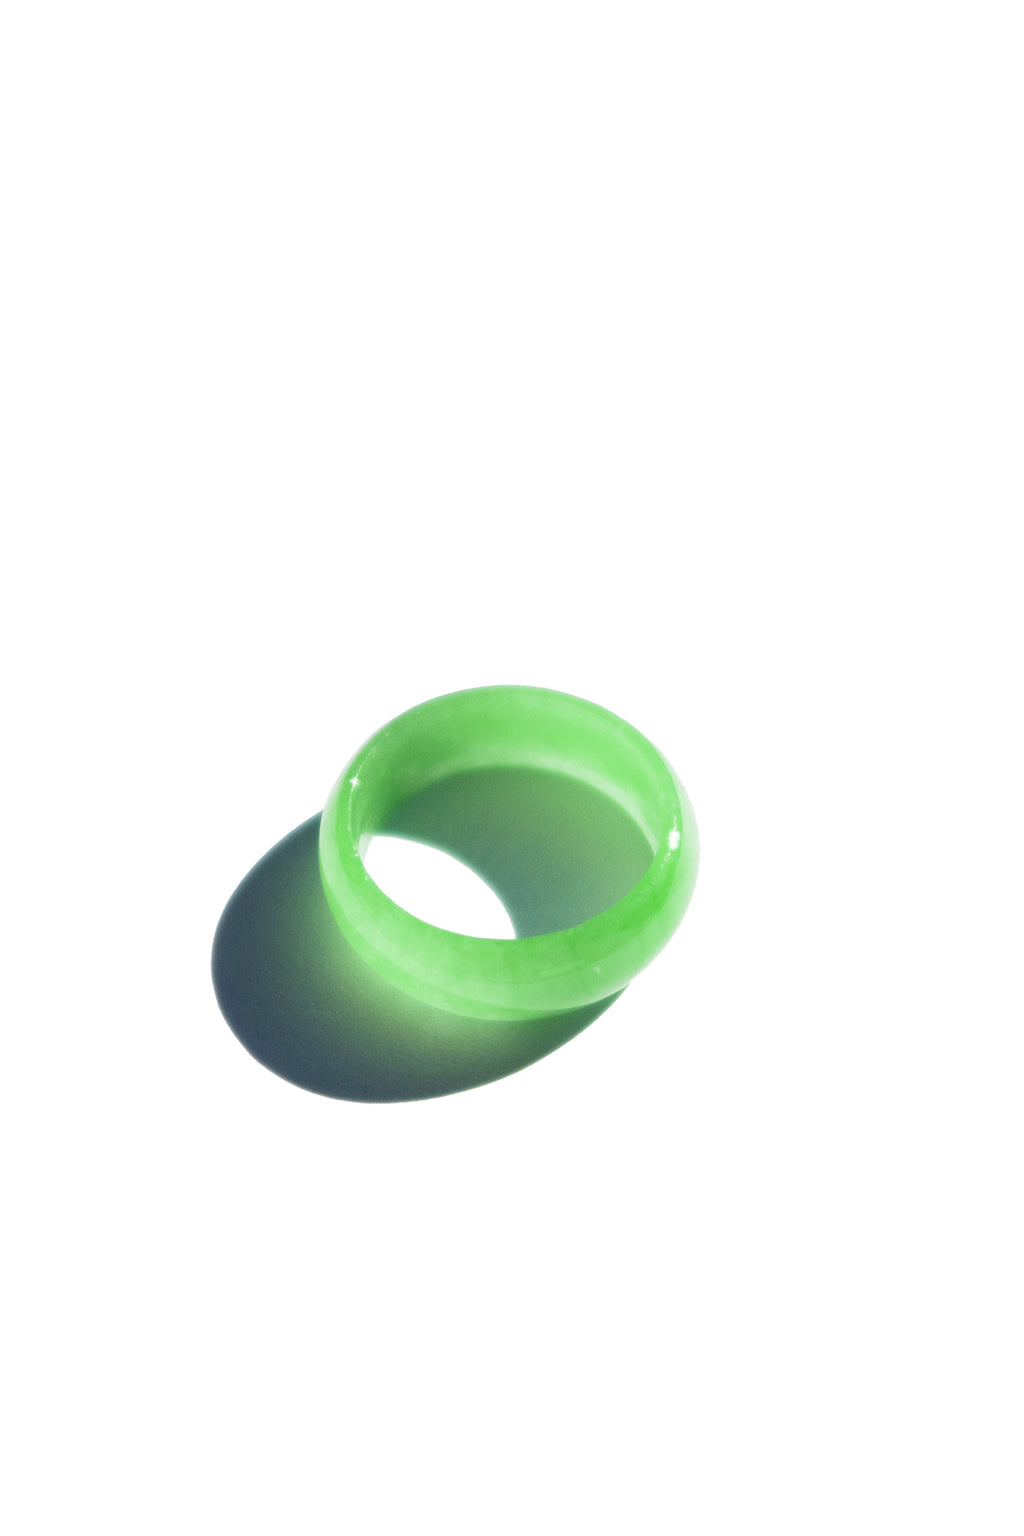 zz-imperial-green-jade-ring-seree-1